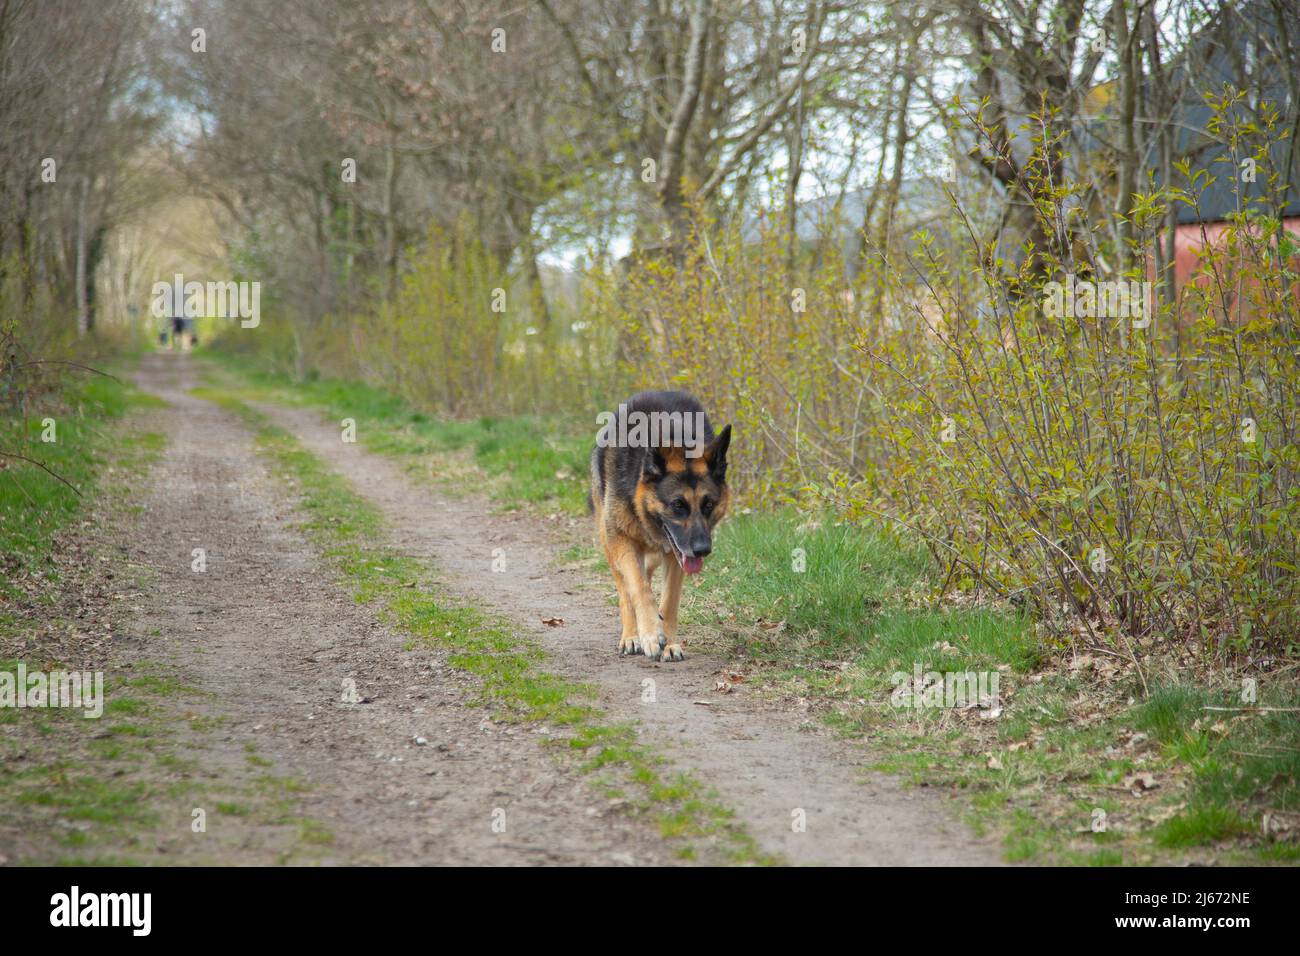 Müde Schäferhund auf unbefestigten Weg mit Bermen, in denen Bäume und Sträucher sind im Frühjahr Knospen Stockfoto